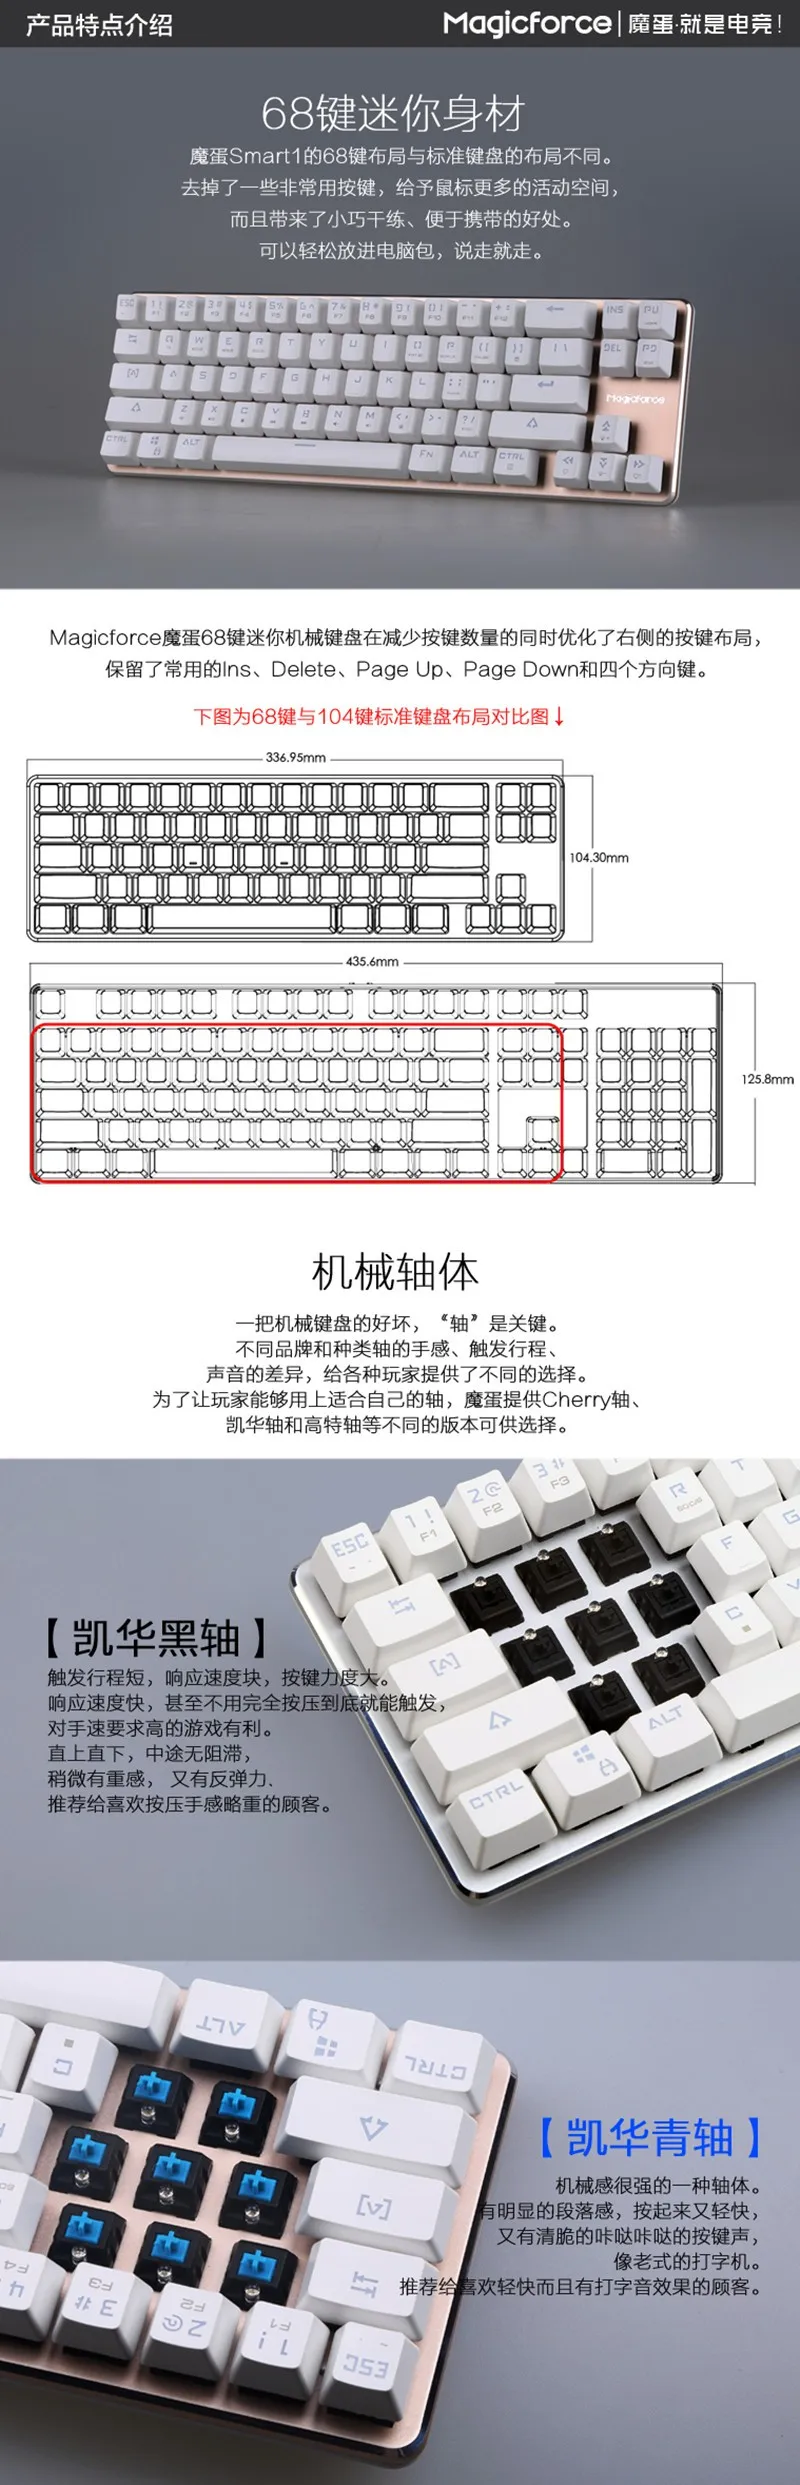 Magicforce Smart 68 клавиш с подсветкой антипривидение USB Механическая игровая клавиатура алюминиевый сплав Kailh MX Синий/Черный переключатели Двойной PCB